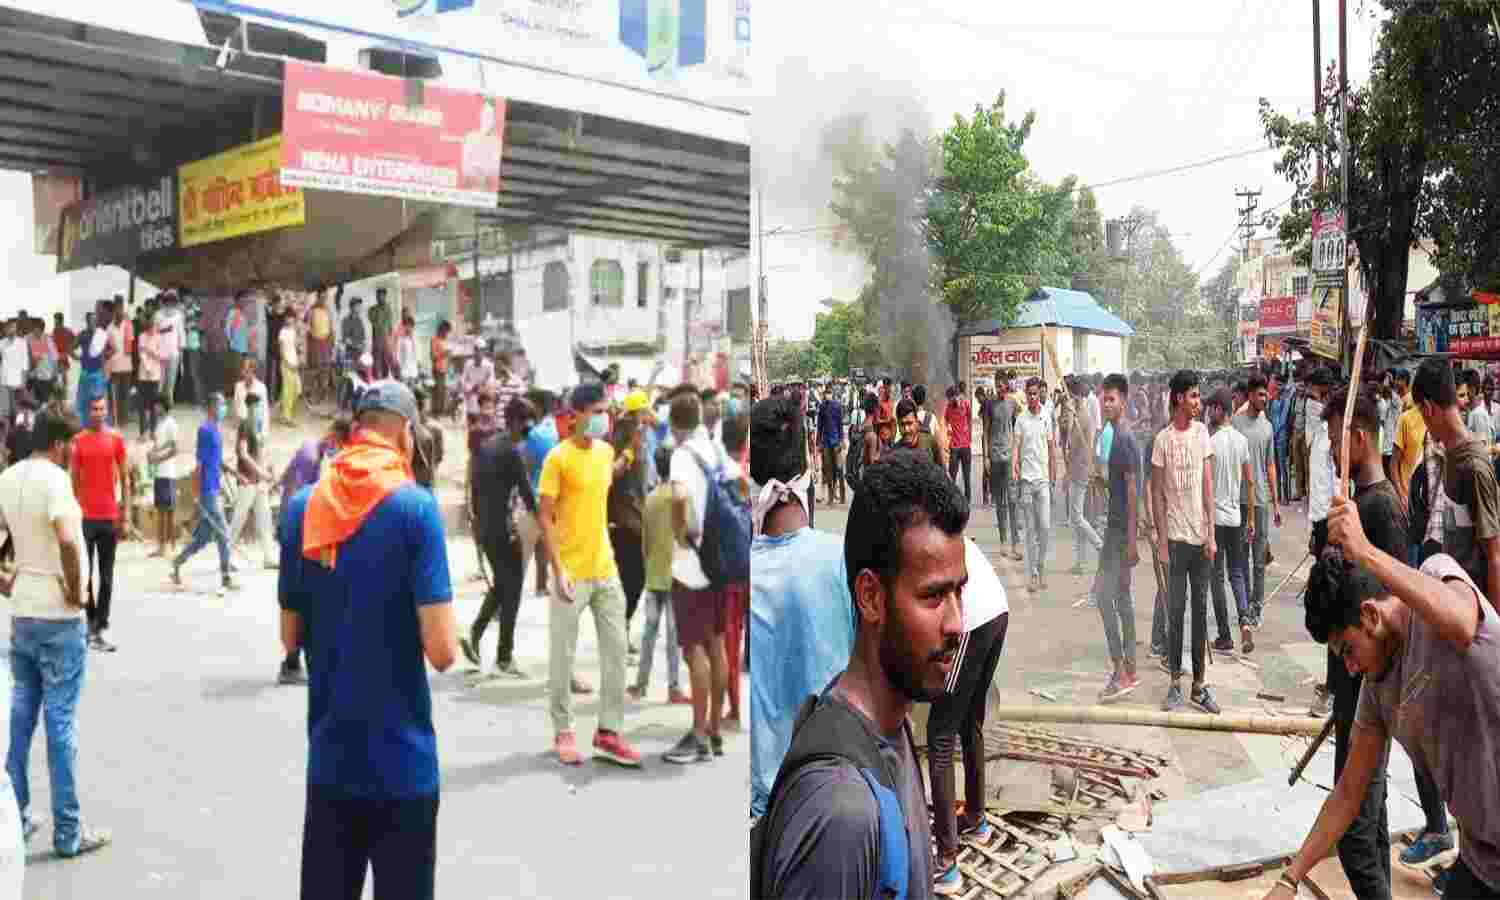 Agnipath Scheme : बिहार में अग्निपथ योजना का भारी विरोध, बक्सर में ट्रेन पर पथराव, मुजफ्फरपुर में सड़क जाम और आगजनी